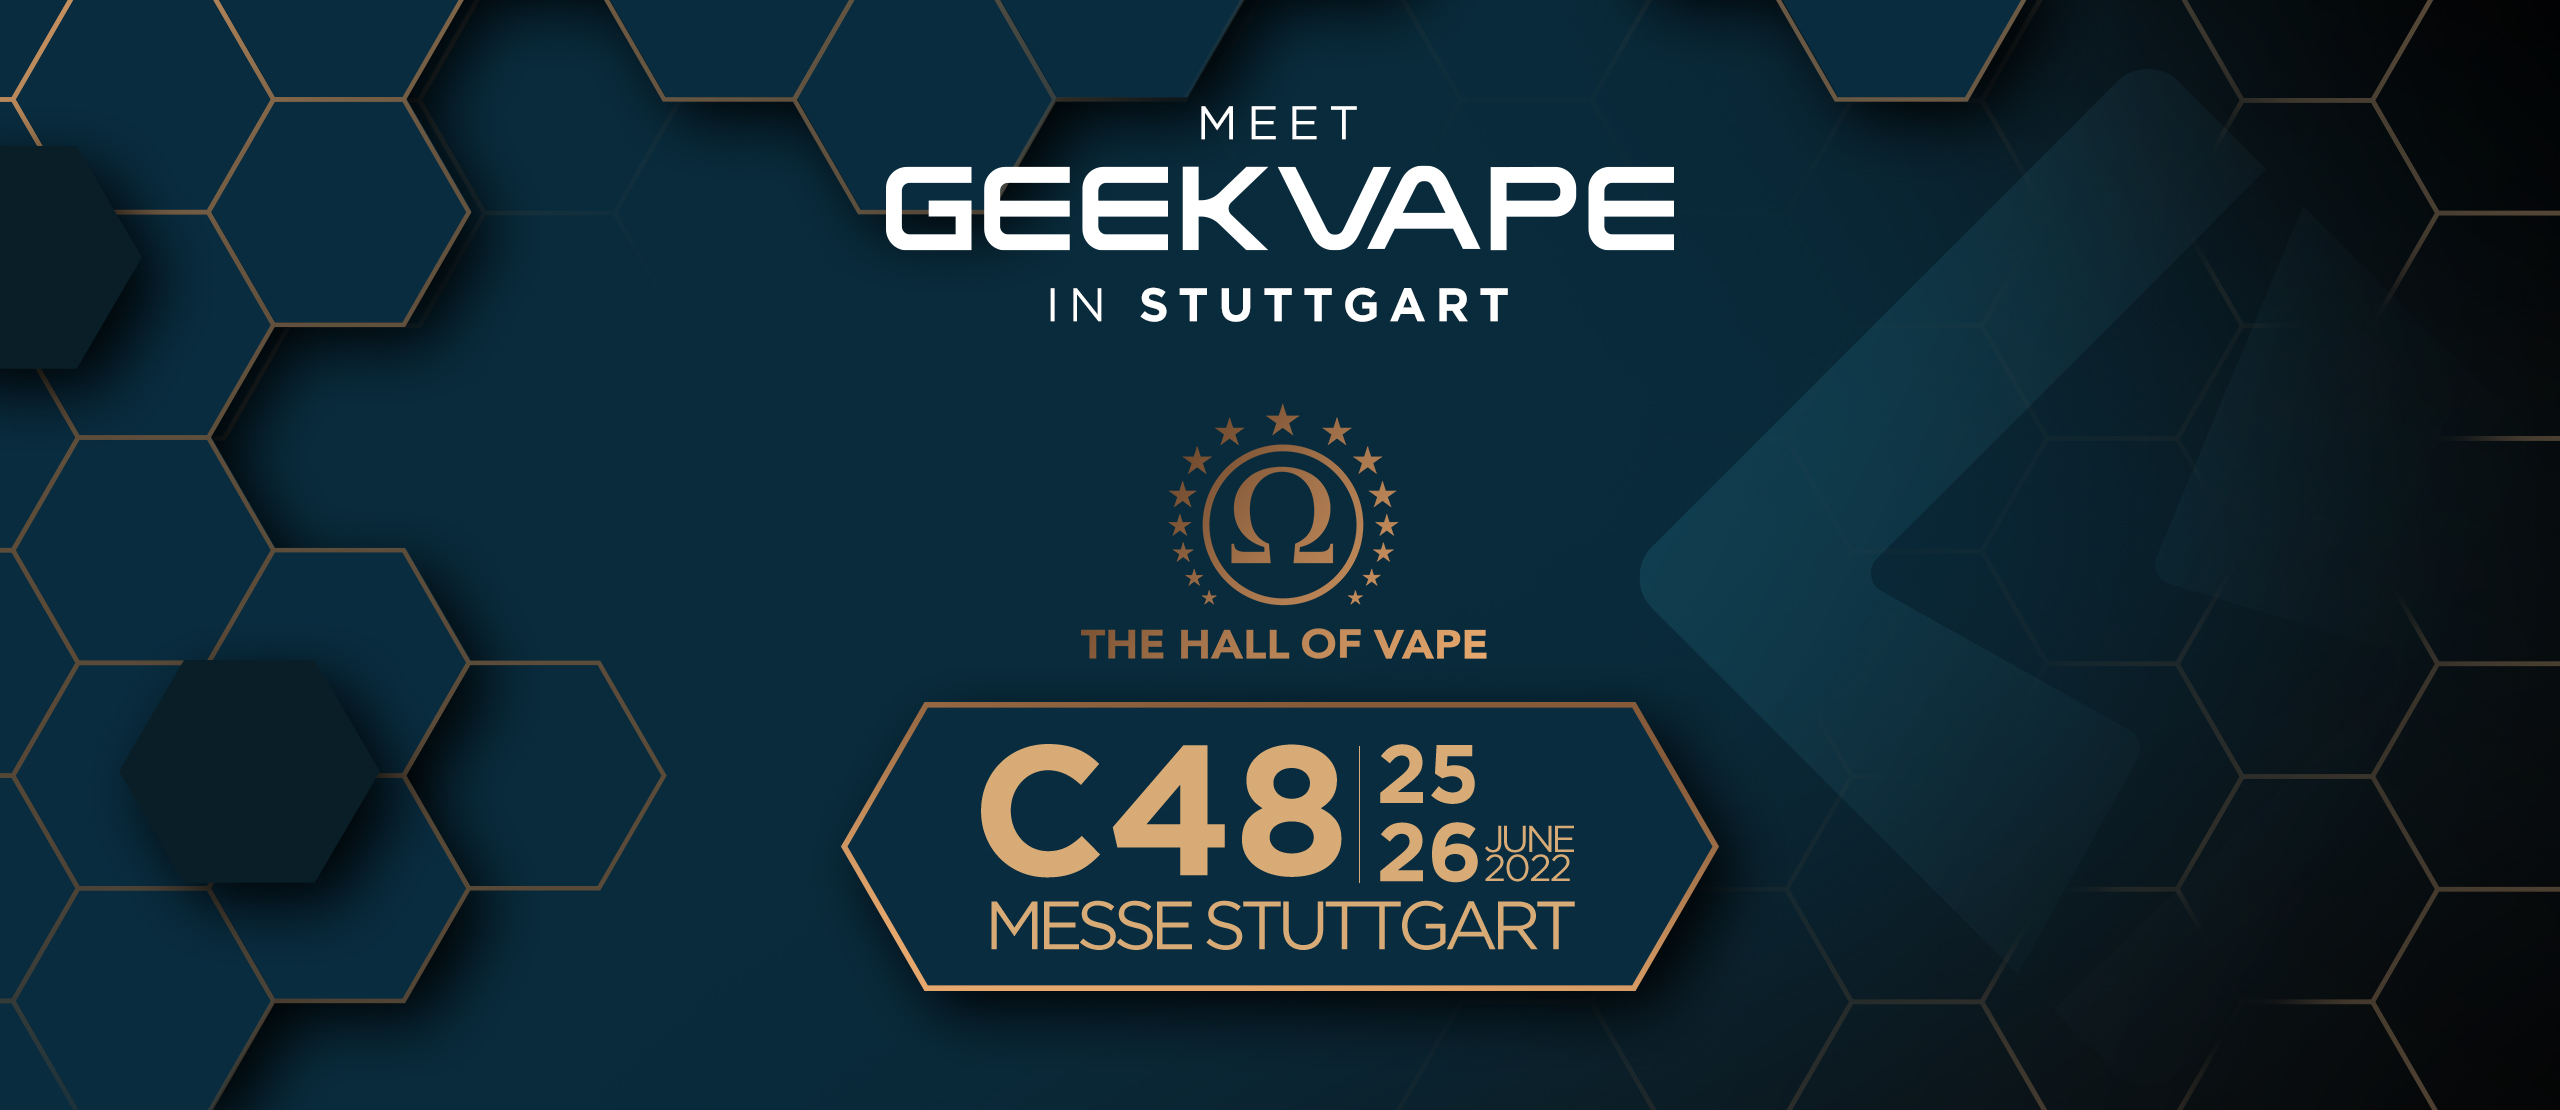 Meet Geekvape in Stuttgart